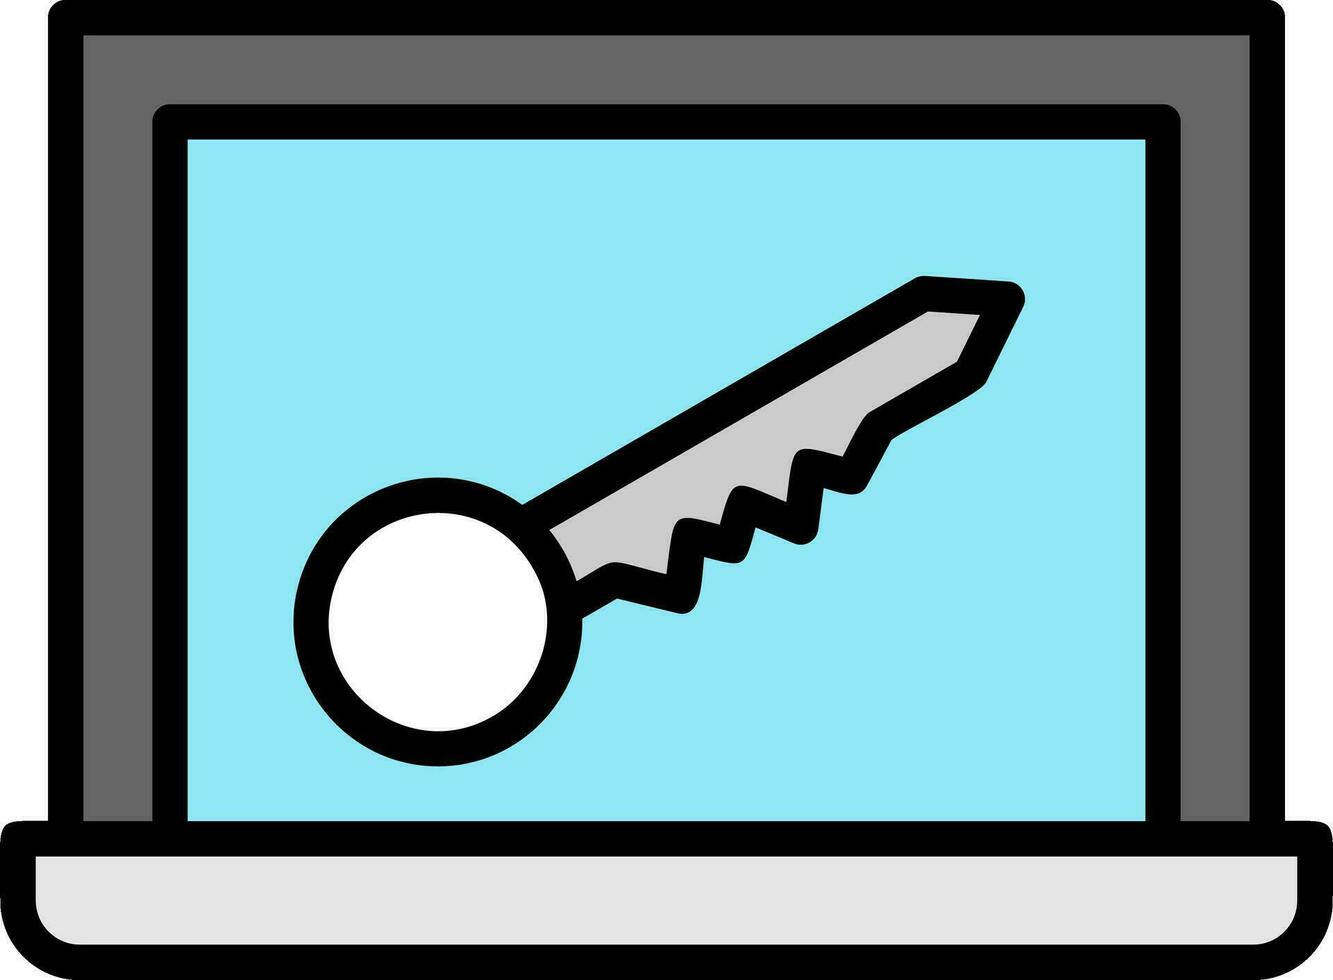 diseño de icono de vector clave